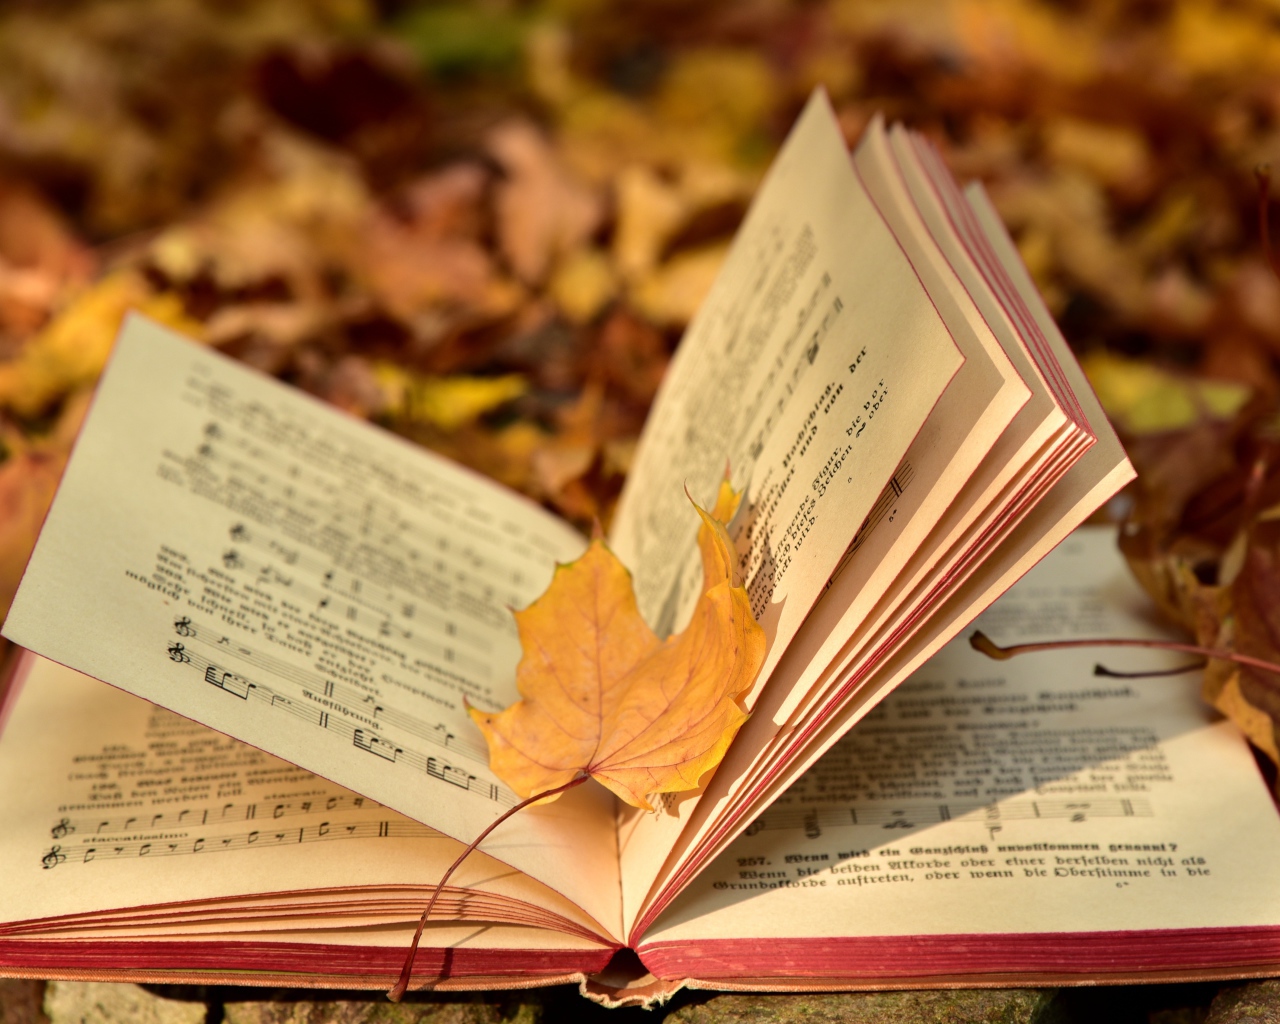 Книга с нотами на земле с опавшими листьями